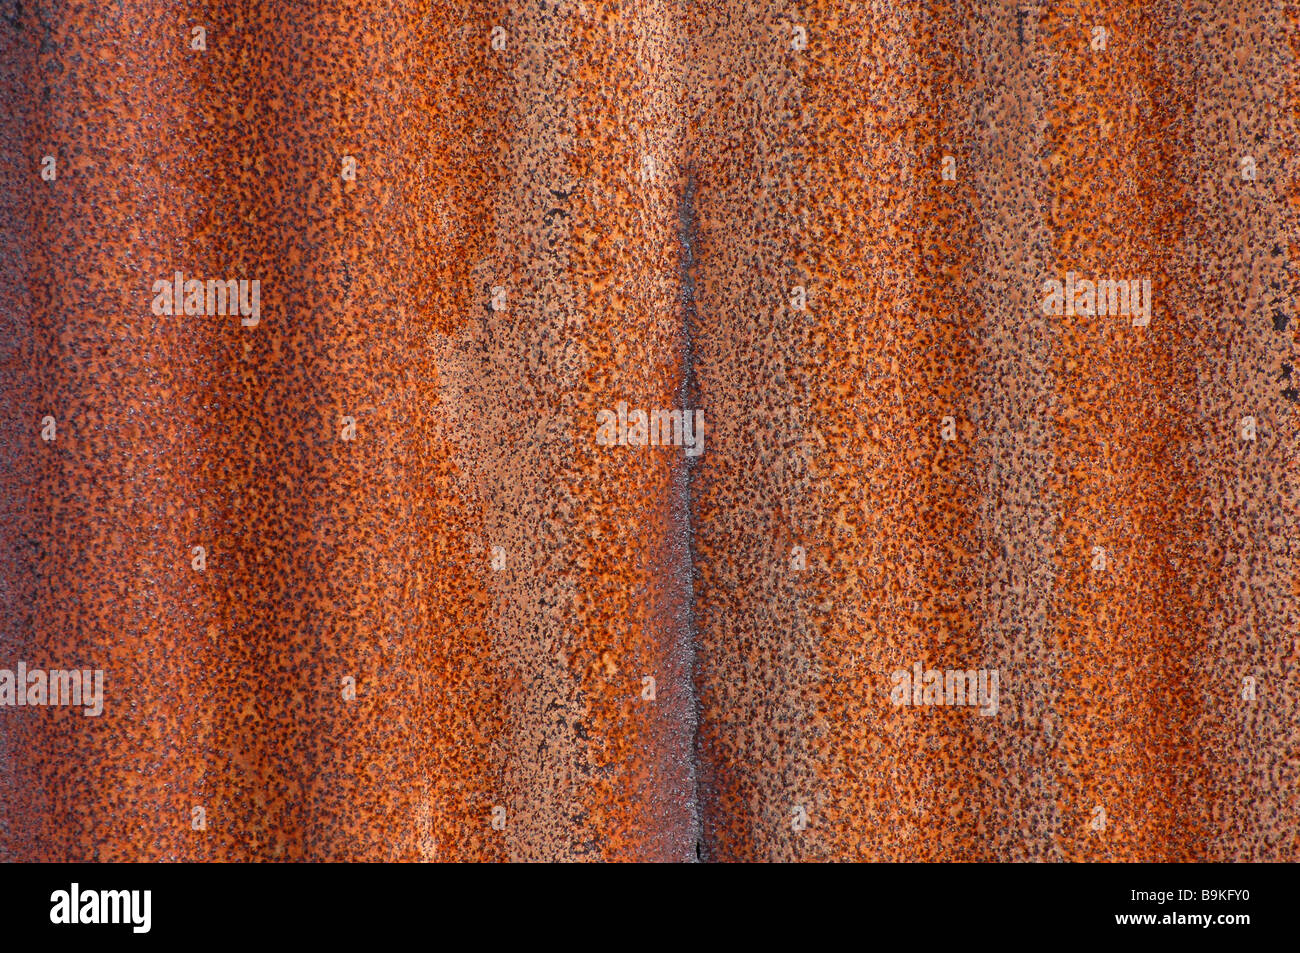 arrugginito ferro arrugginito dettaglio di texture rosse e mostrando le ondulazioni nel metallo creando uno sfondo astratto Foto Stock